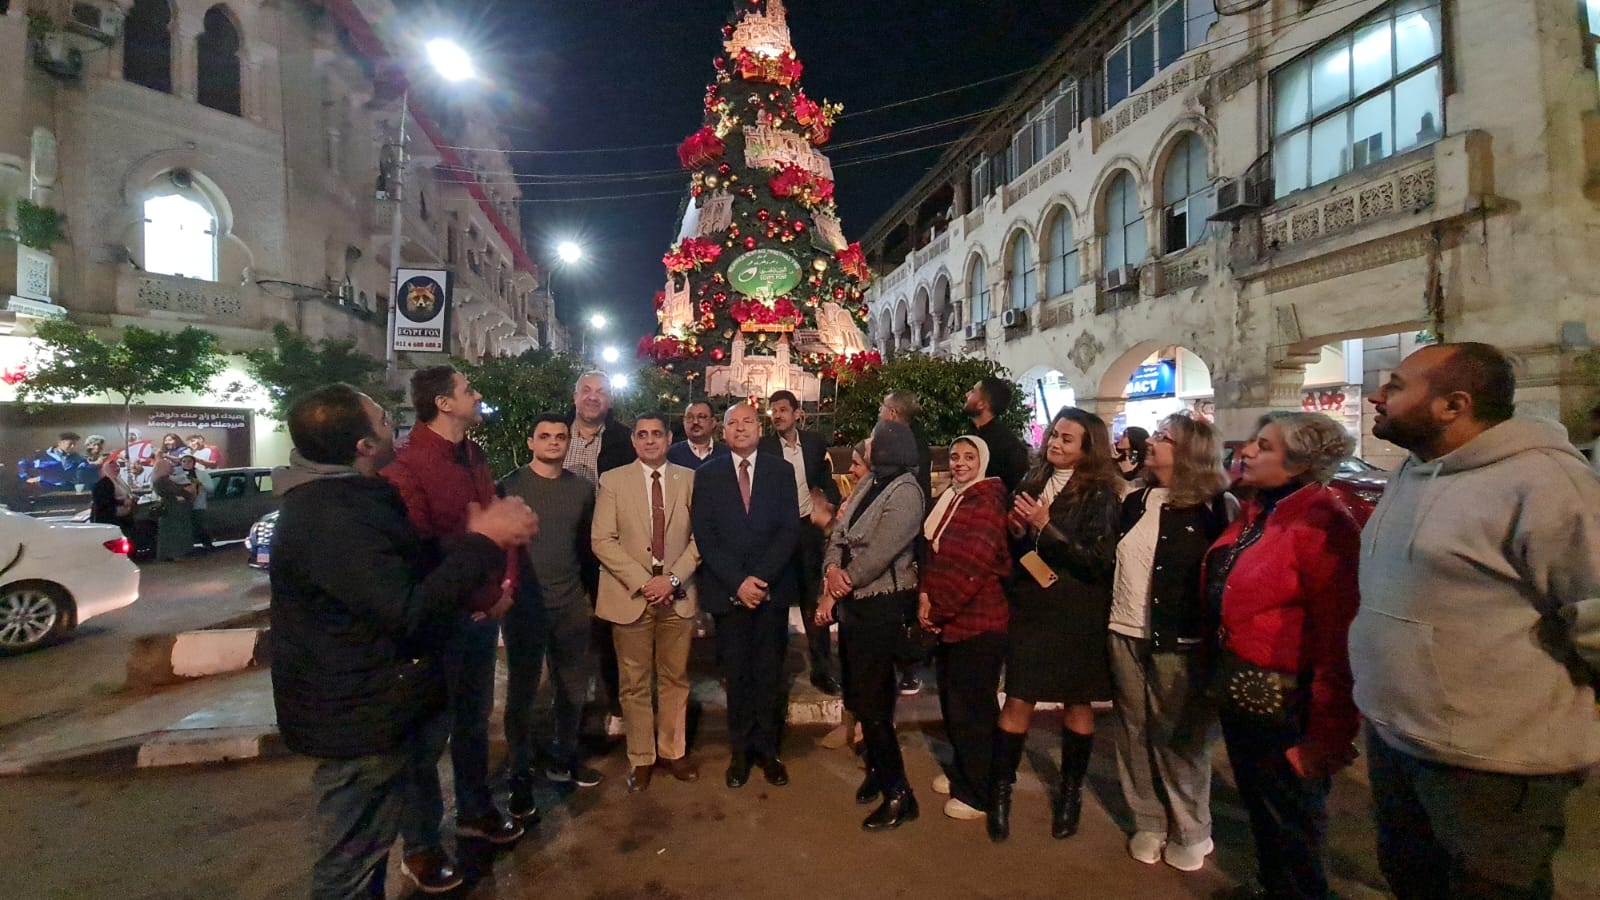 زينت شوارع منطقة الكوربة بمصر الجديدة بالقاهرة لاستقبال عيد الميلاد واحتفالات رأس السنة